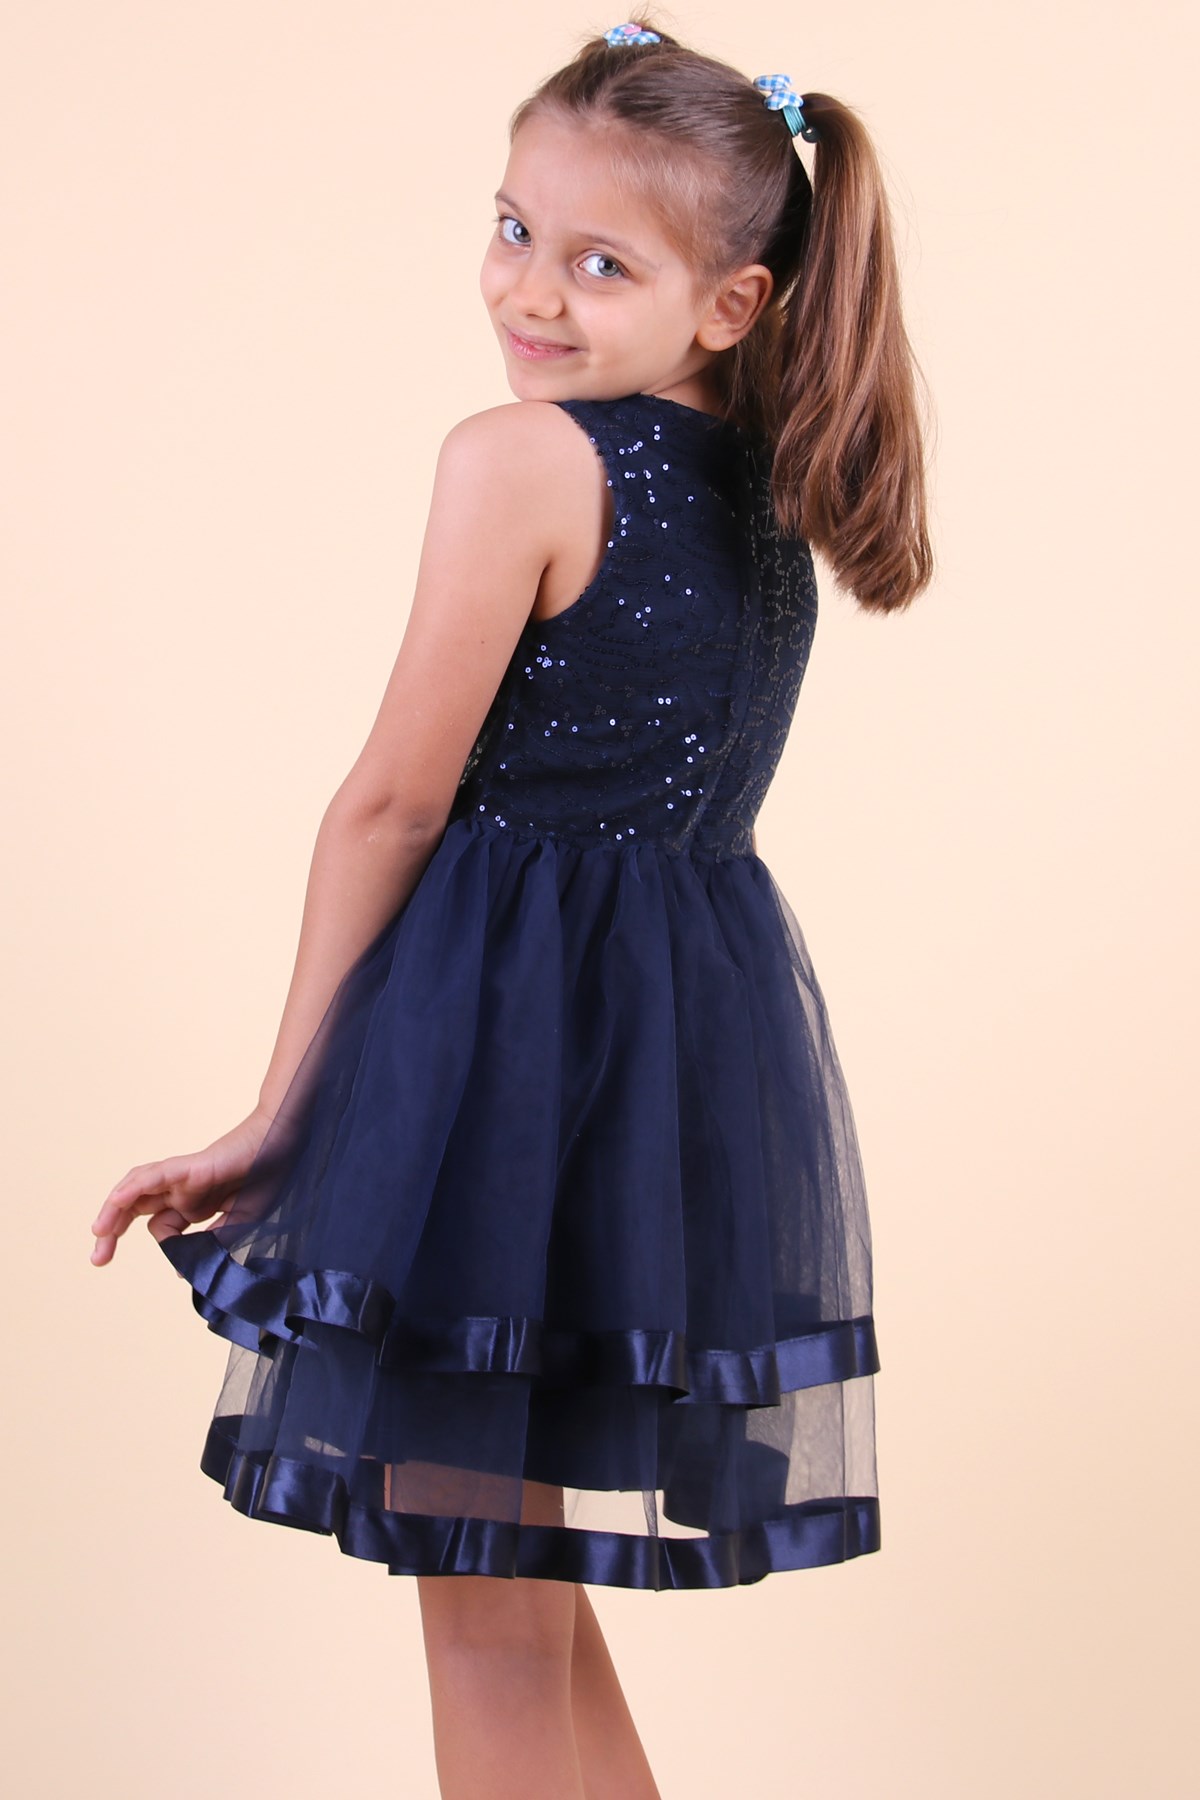 Pullu Saten Fiyonklu Lacivert - Kız Çocuk Elbisesi 5-10 Yaş